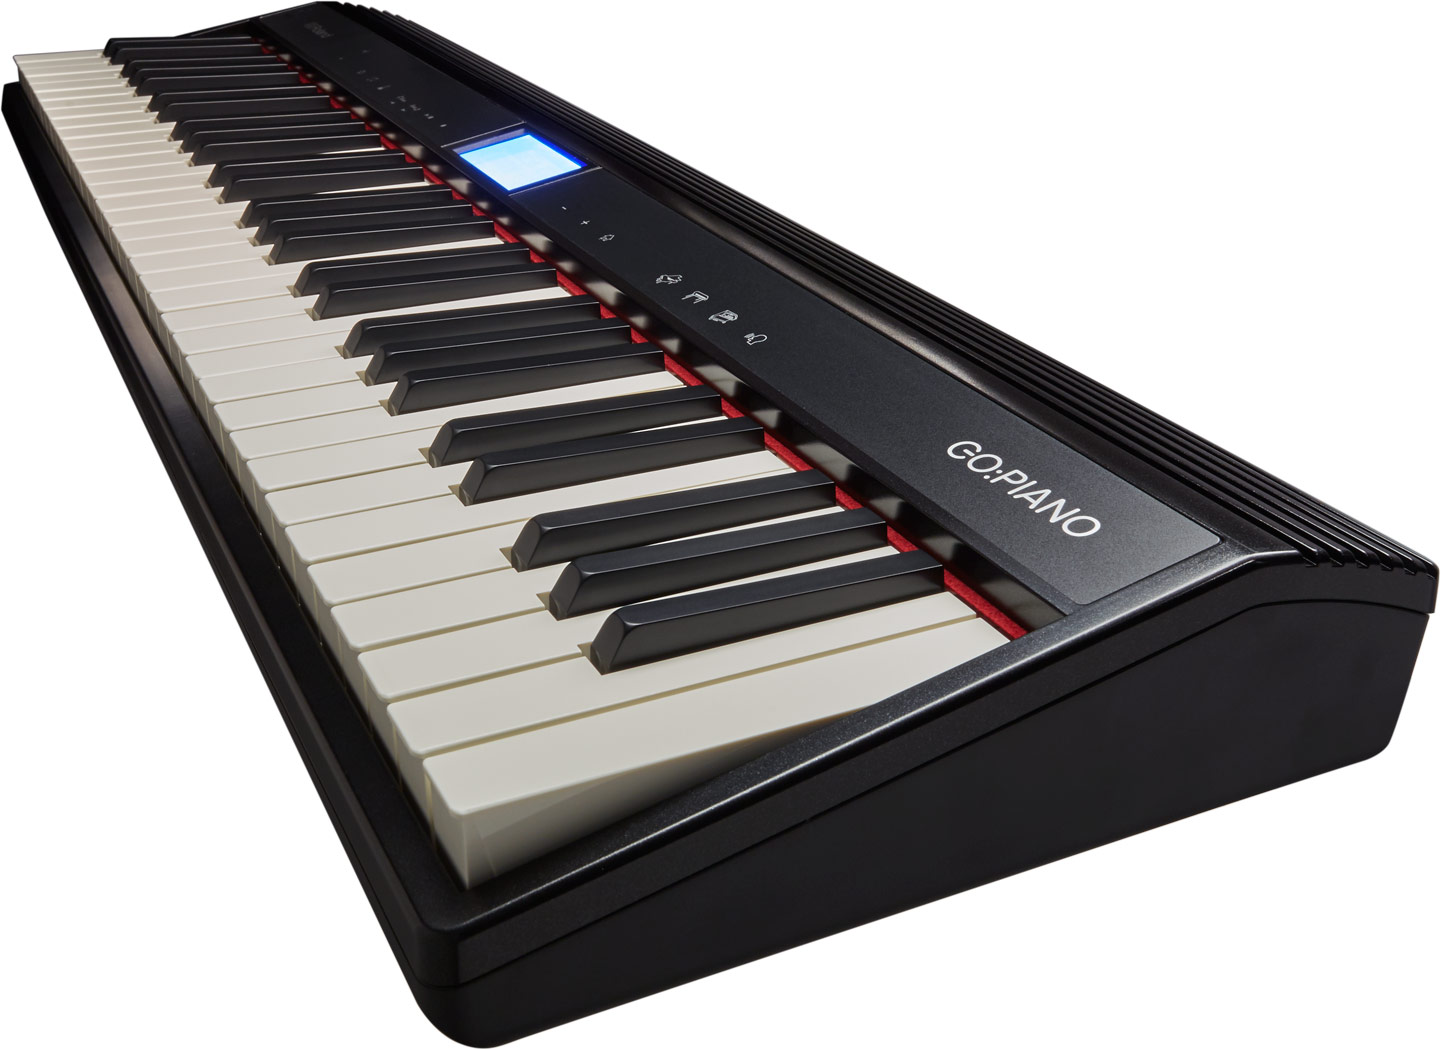 Roland - GO:PIANO | Digital Piano (GO-61P)